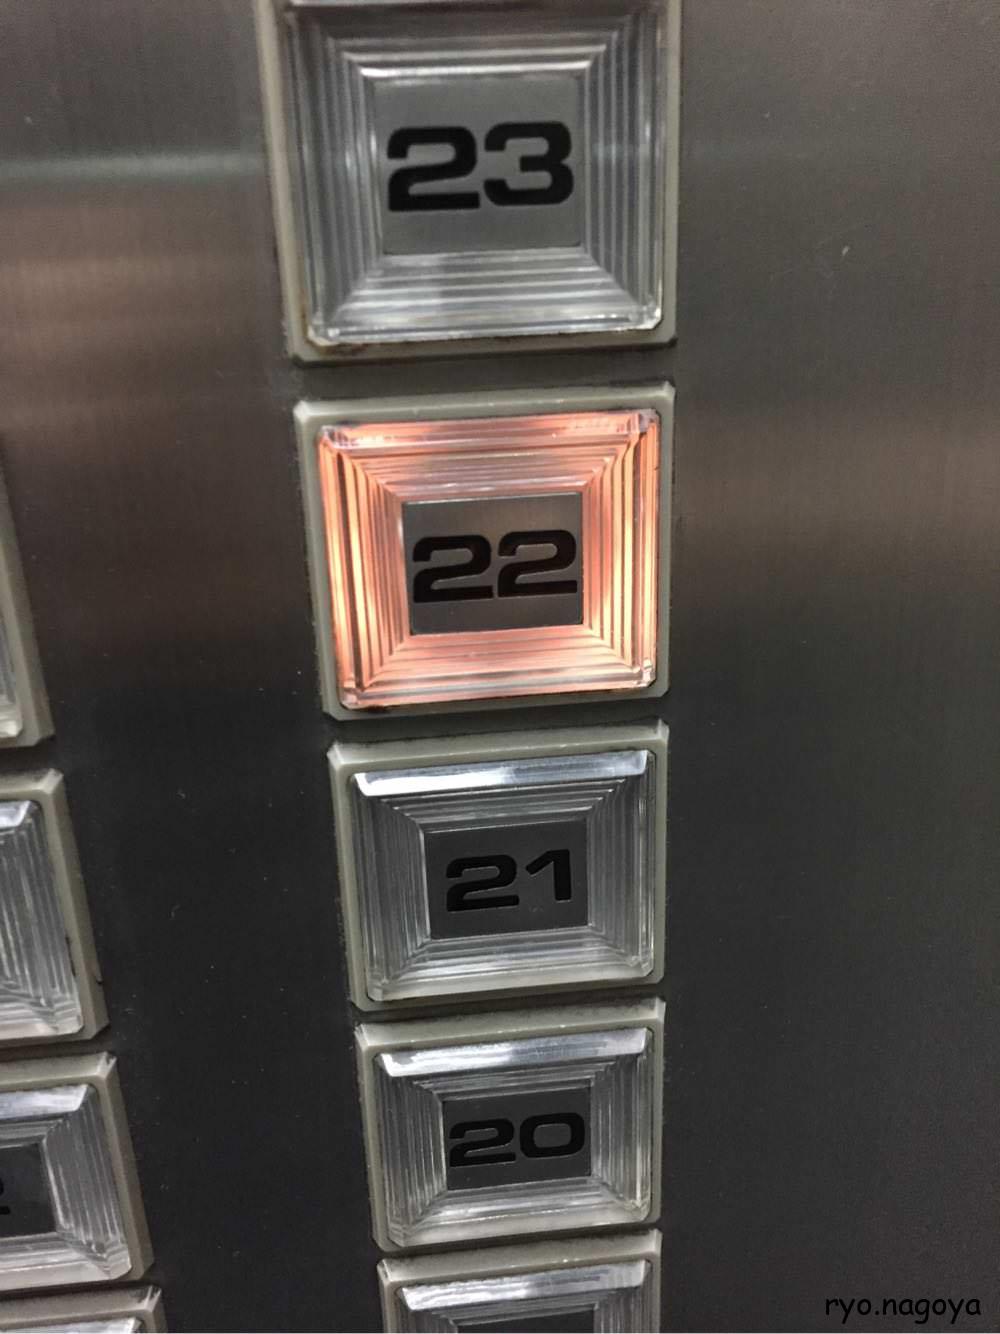 エレベーターで、22回に行く、階段では無理っぽいです。（階段使えても疲れるのでいいです）